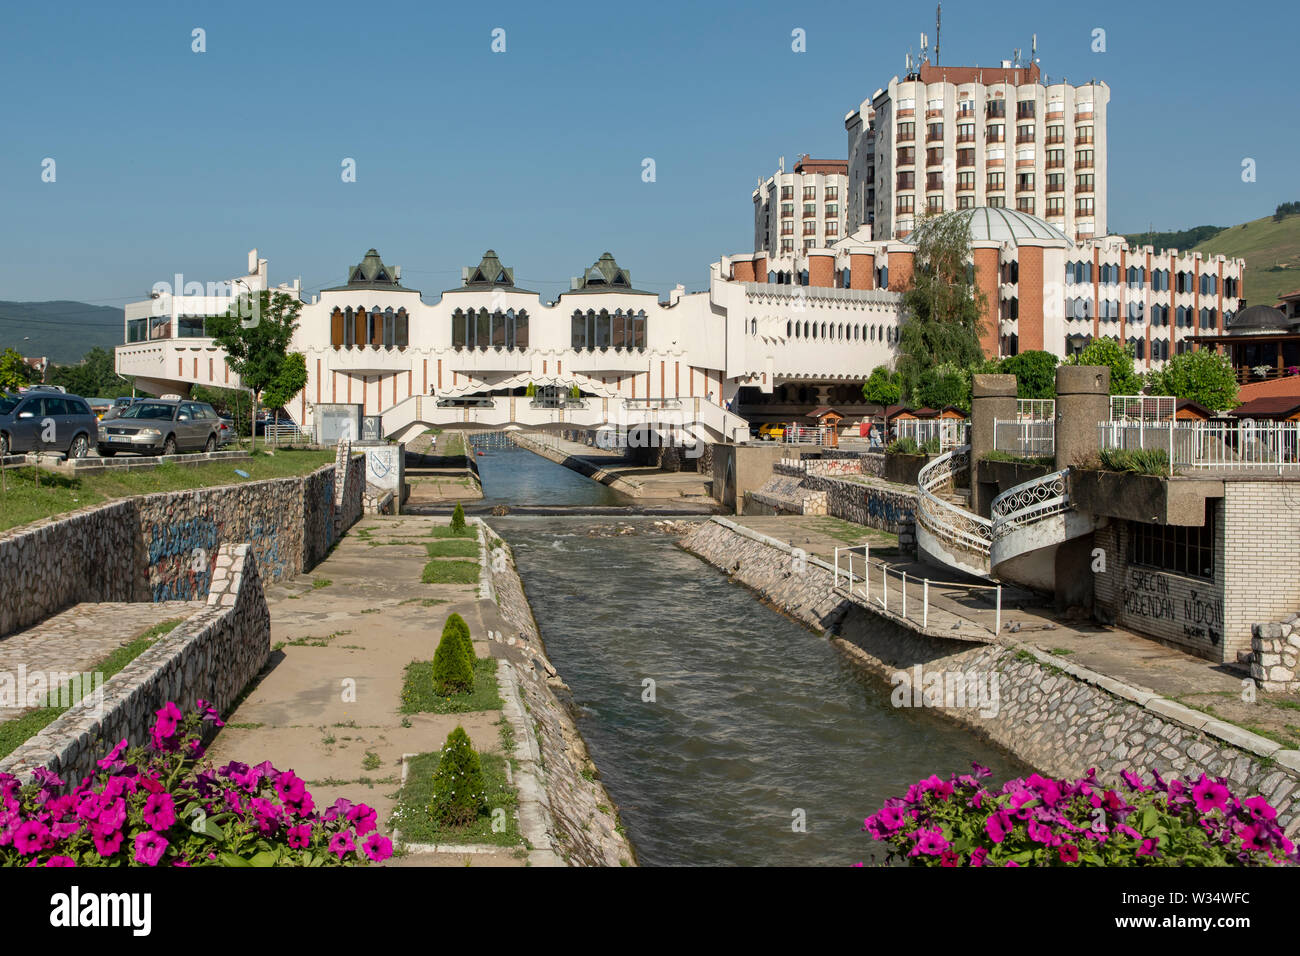 Ljudska River and Hotel Vrbak, Novi Pazar, Serbia Stock Photo